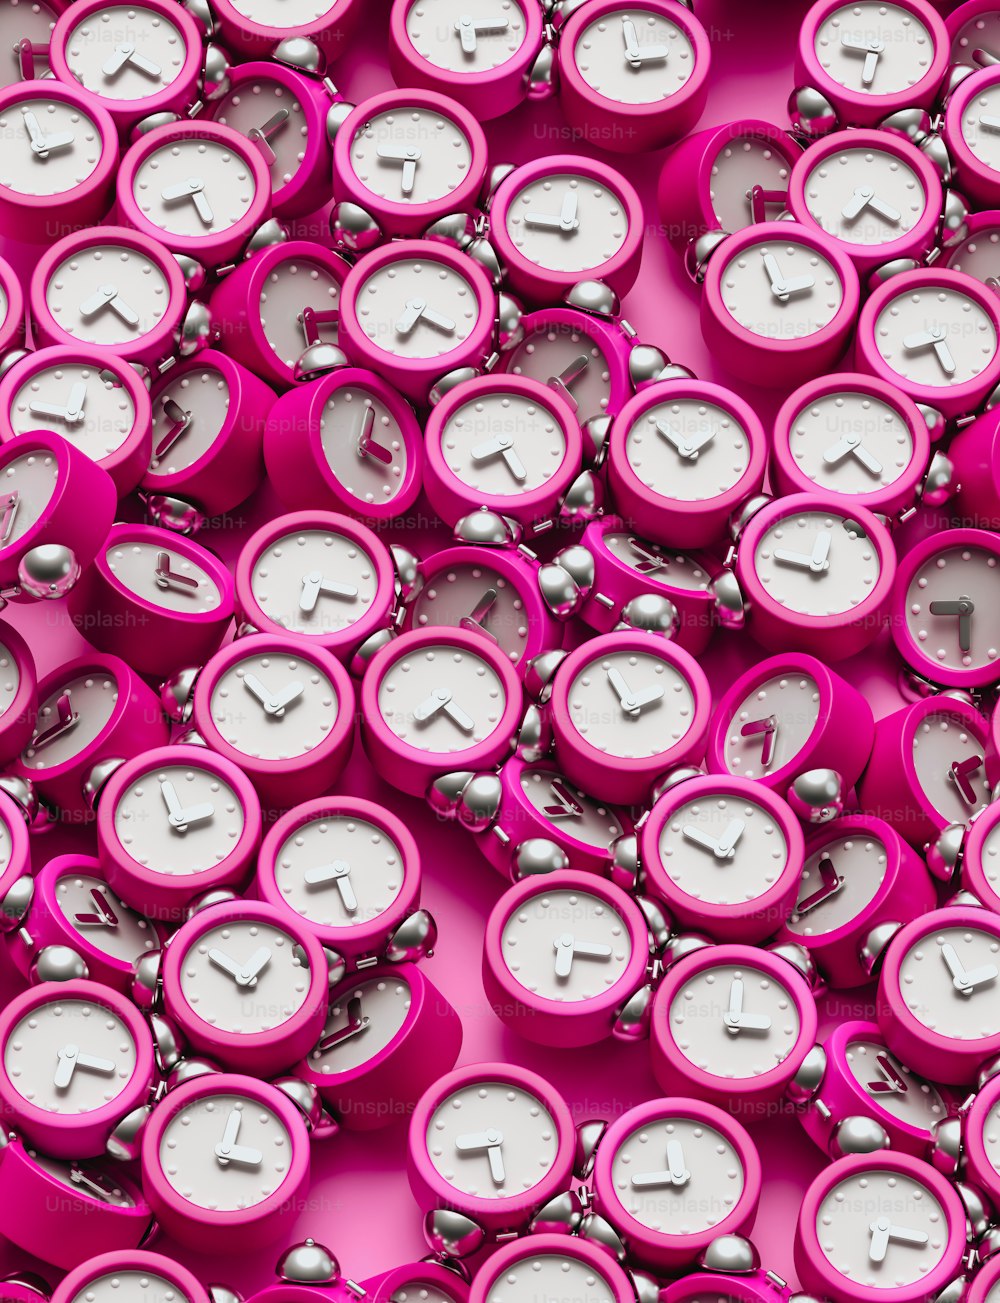 um monte de relógios que são rosa e branco